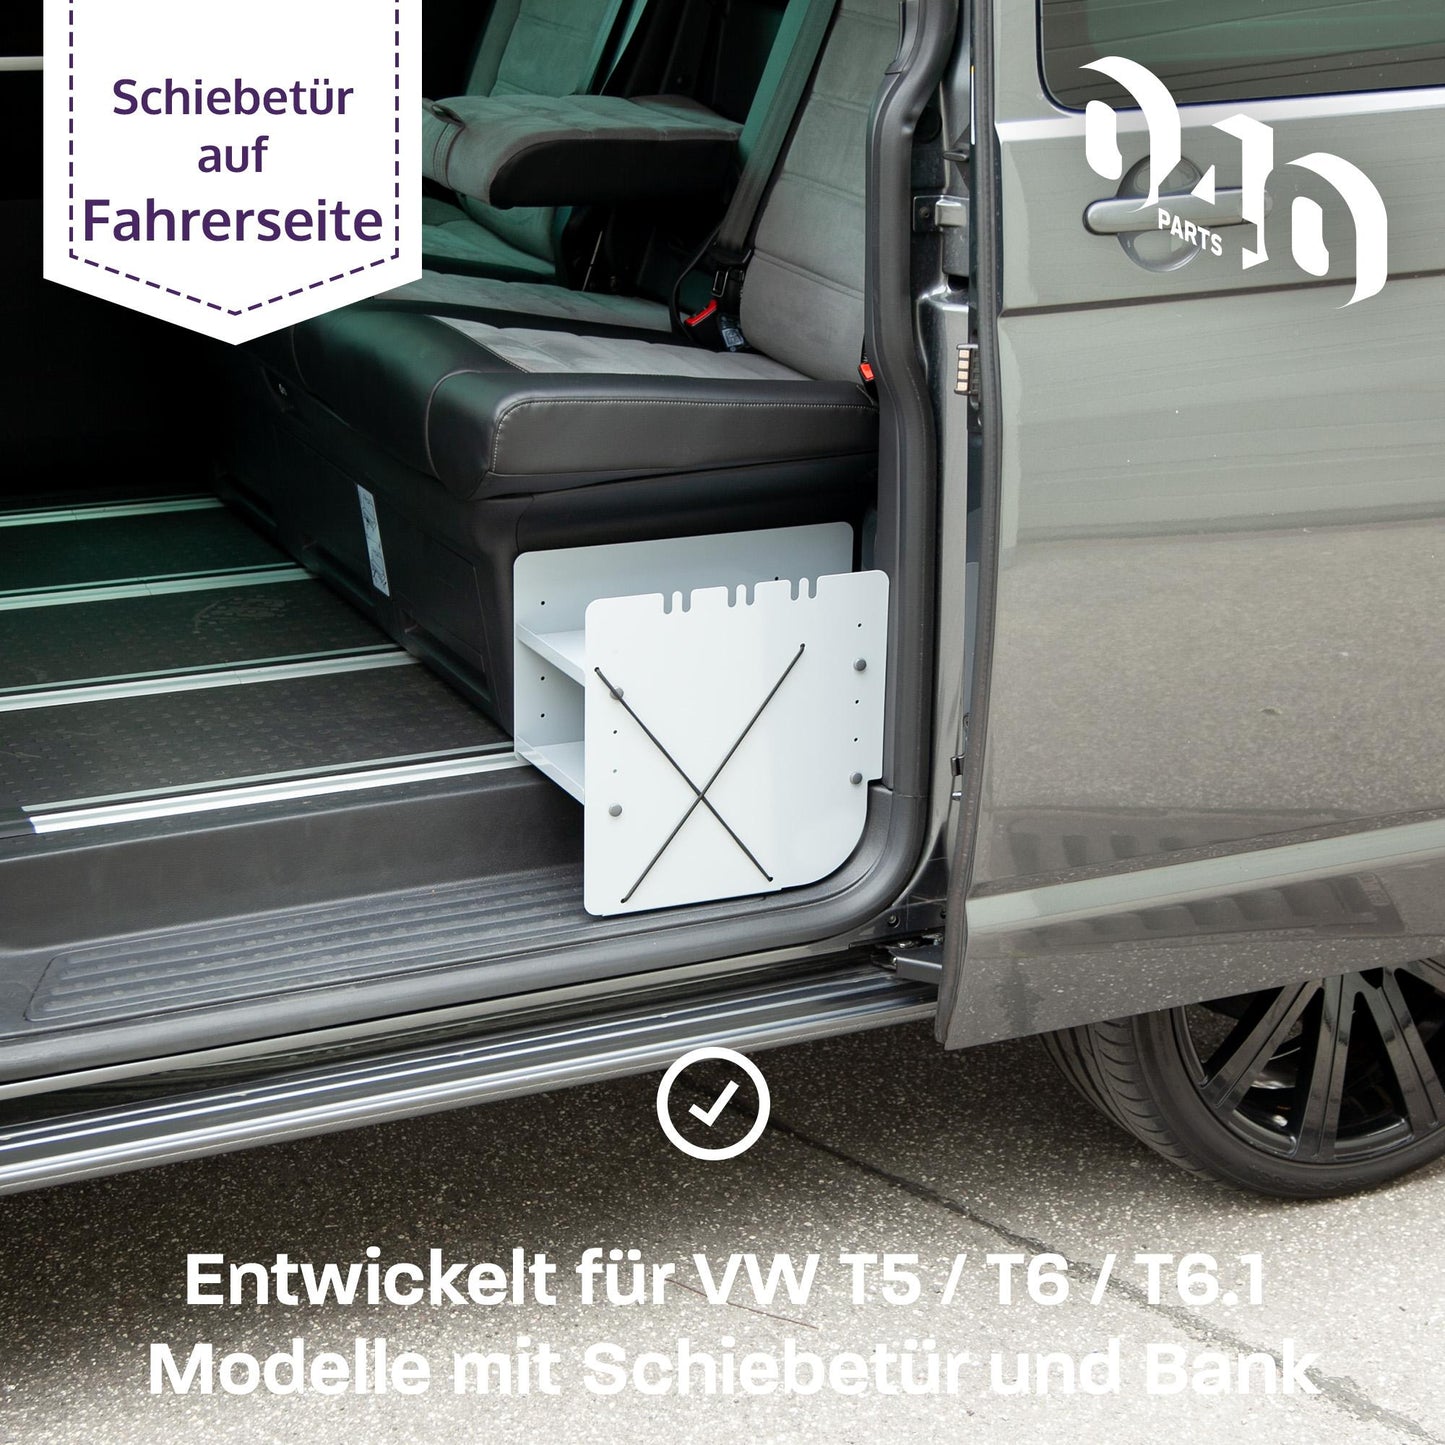 040 Parts Schuhregal GRAU FAHRERSEITE Zubehör passend für VW T5 T6 T6.1 Schuhorganizer Schuhtasche